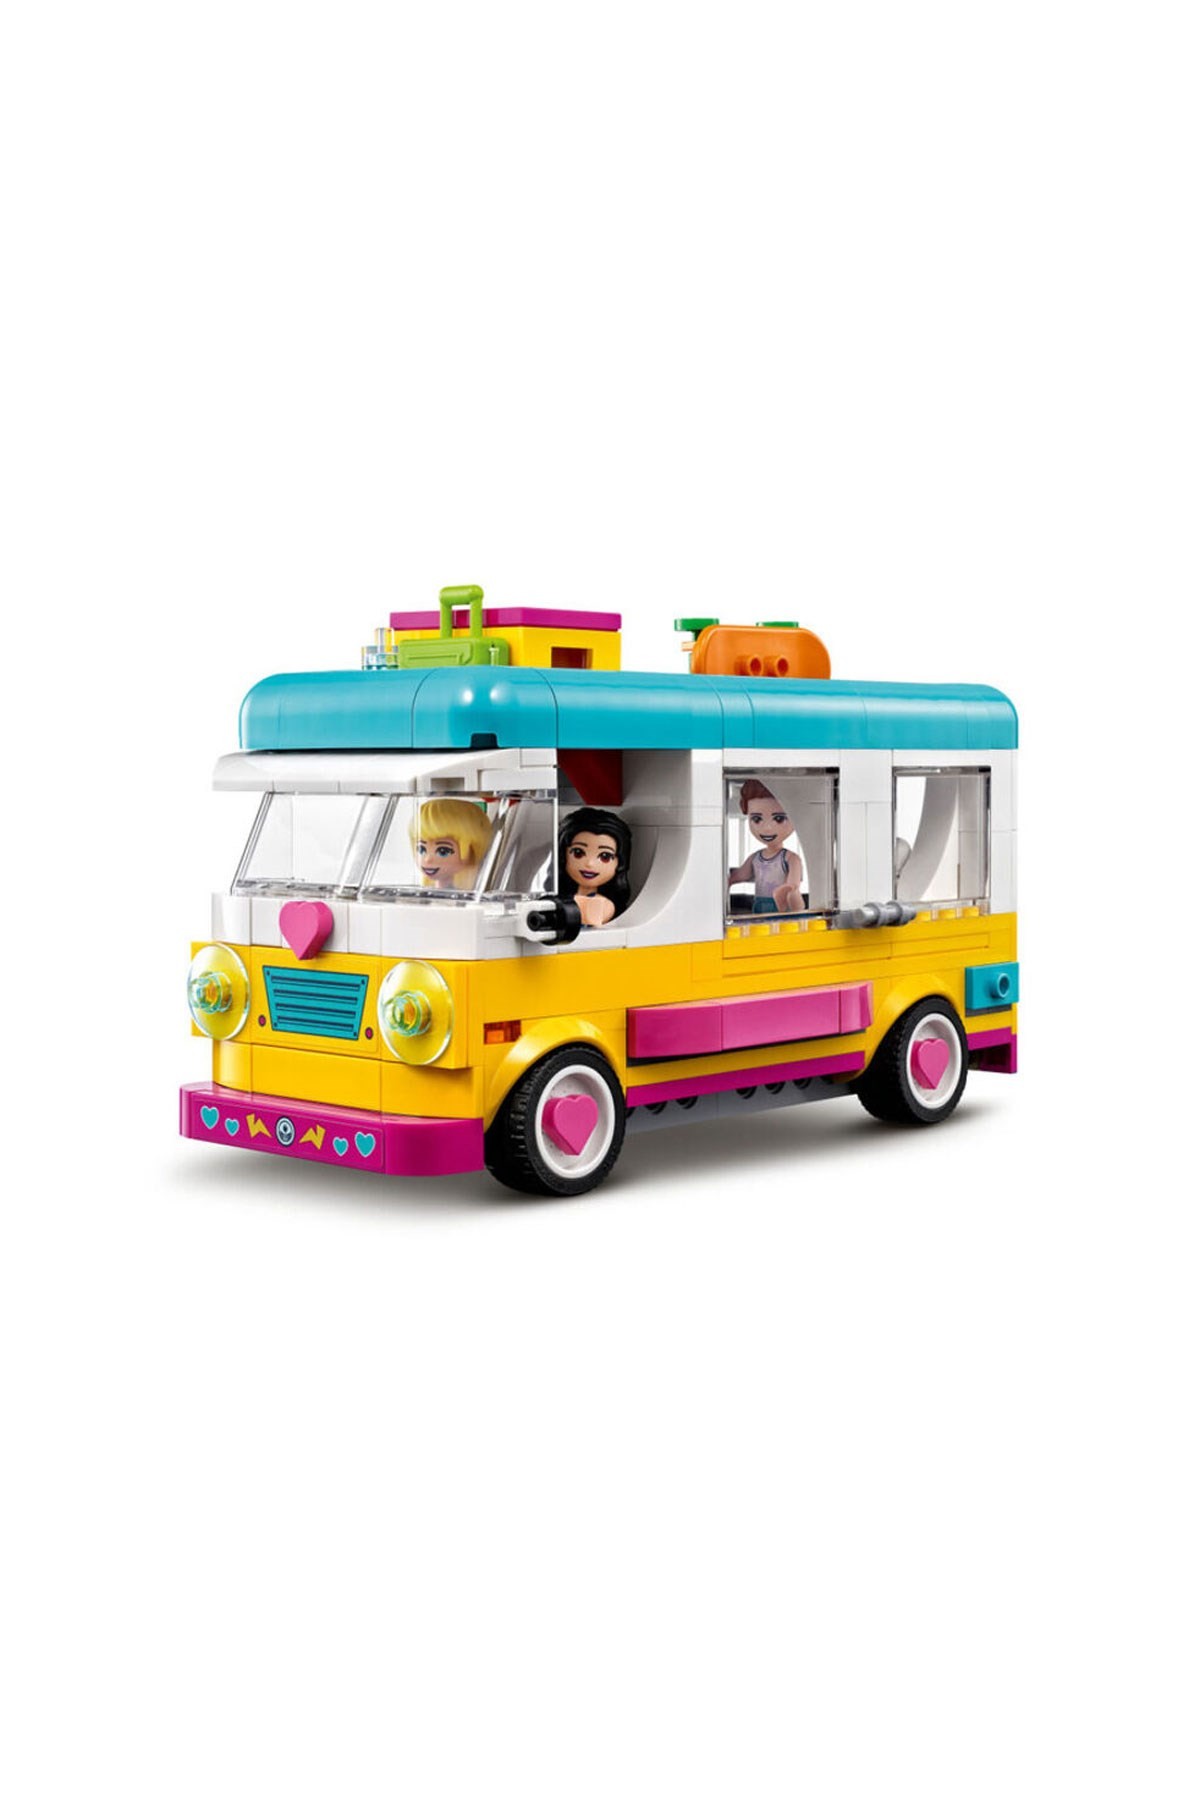 Lego Friends Orman Karavanı ve Teknesi 41681